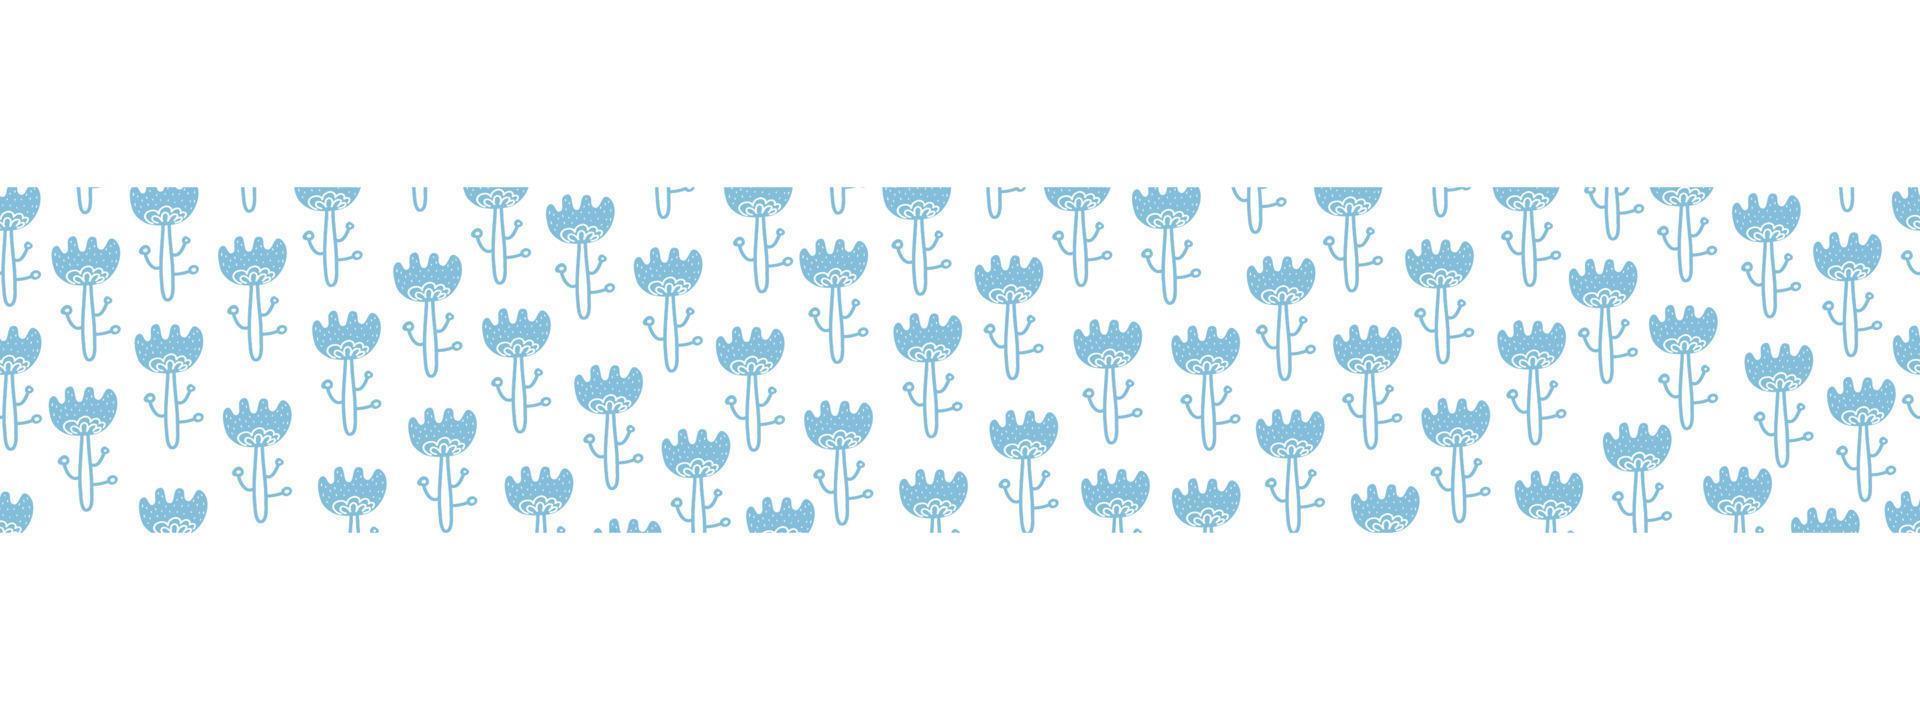 borda sem costura horizontal estilo boho com flores. desenho dos desenhos animados baner floral sem costura azul. estilo folclórico escandinavo impetuoso. para tecido, cartões, papel de parede, decoração de casa. vetor